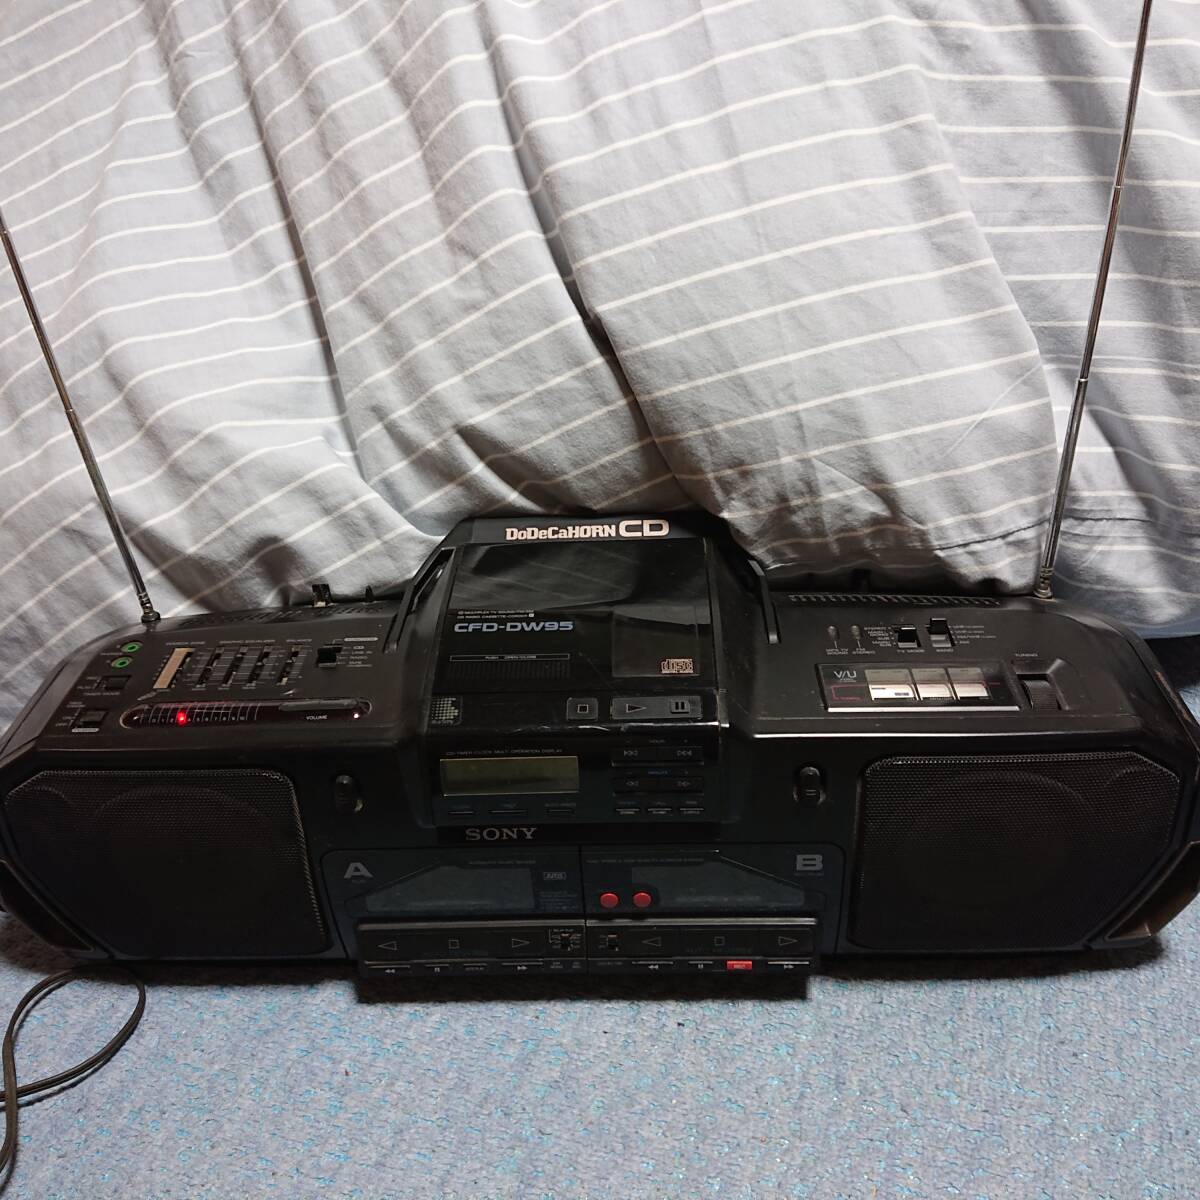 SONY ソニー CFD-DW95 DoDeCaHORN CD ドデカホーン ラジカセ 中古 電源入りラジオが受信できる事は確認しましたがそれ以上は不明です。_画像1